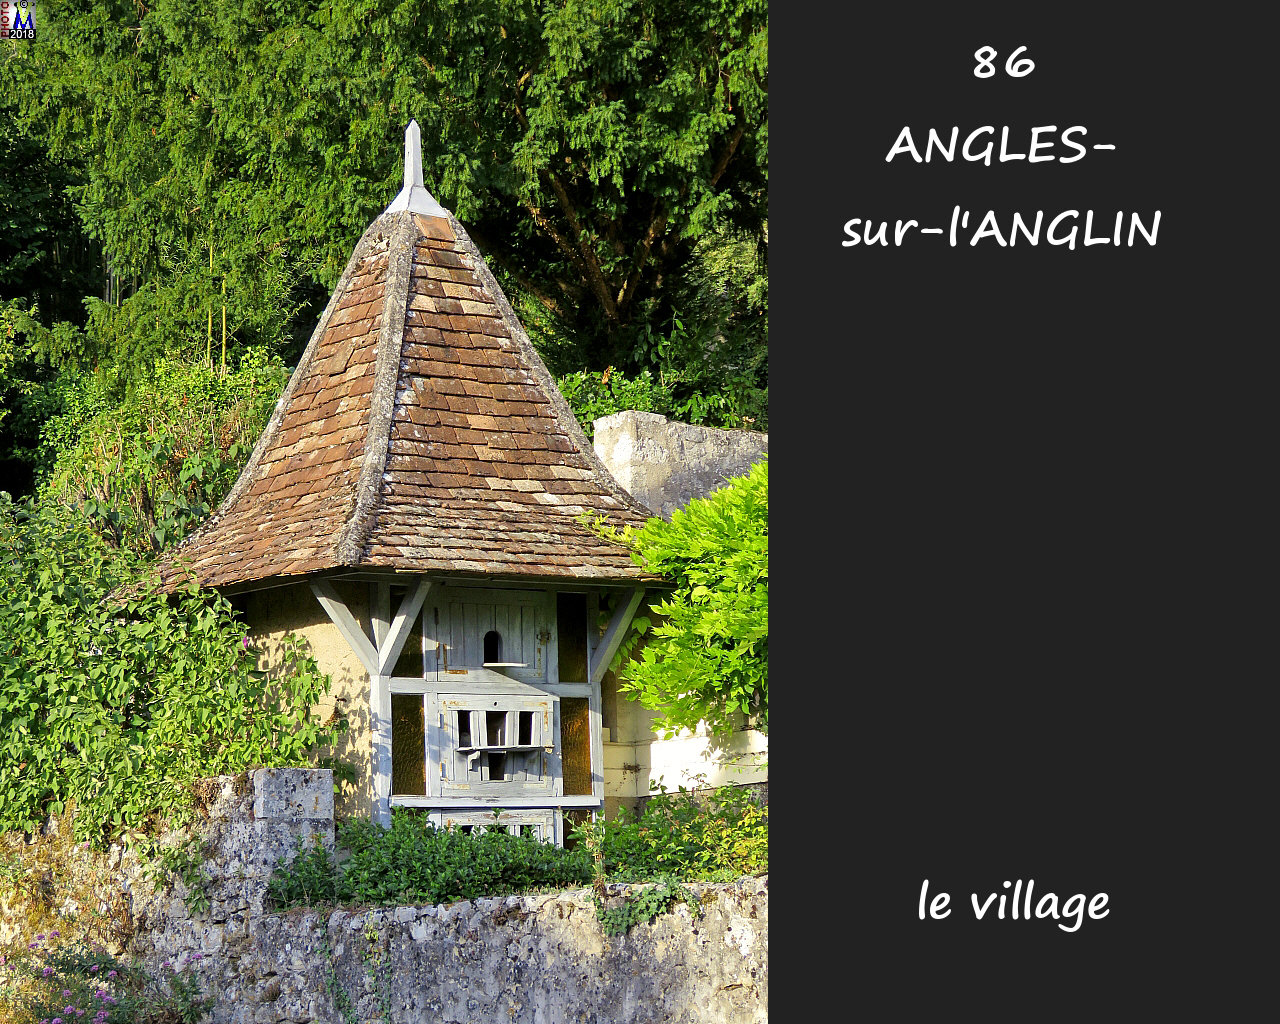 86ANGLES-S-ANGLIN_village_1102.jpg